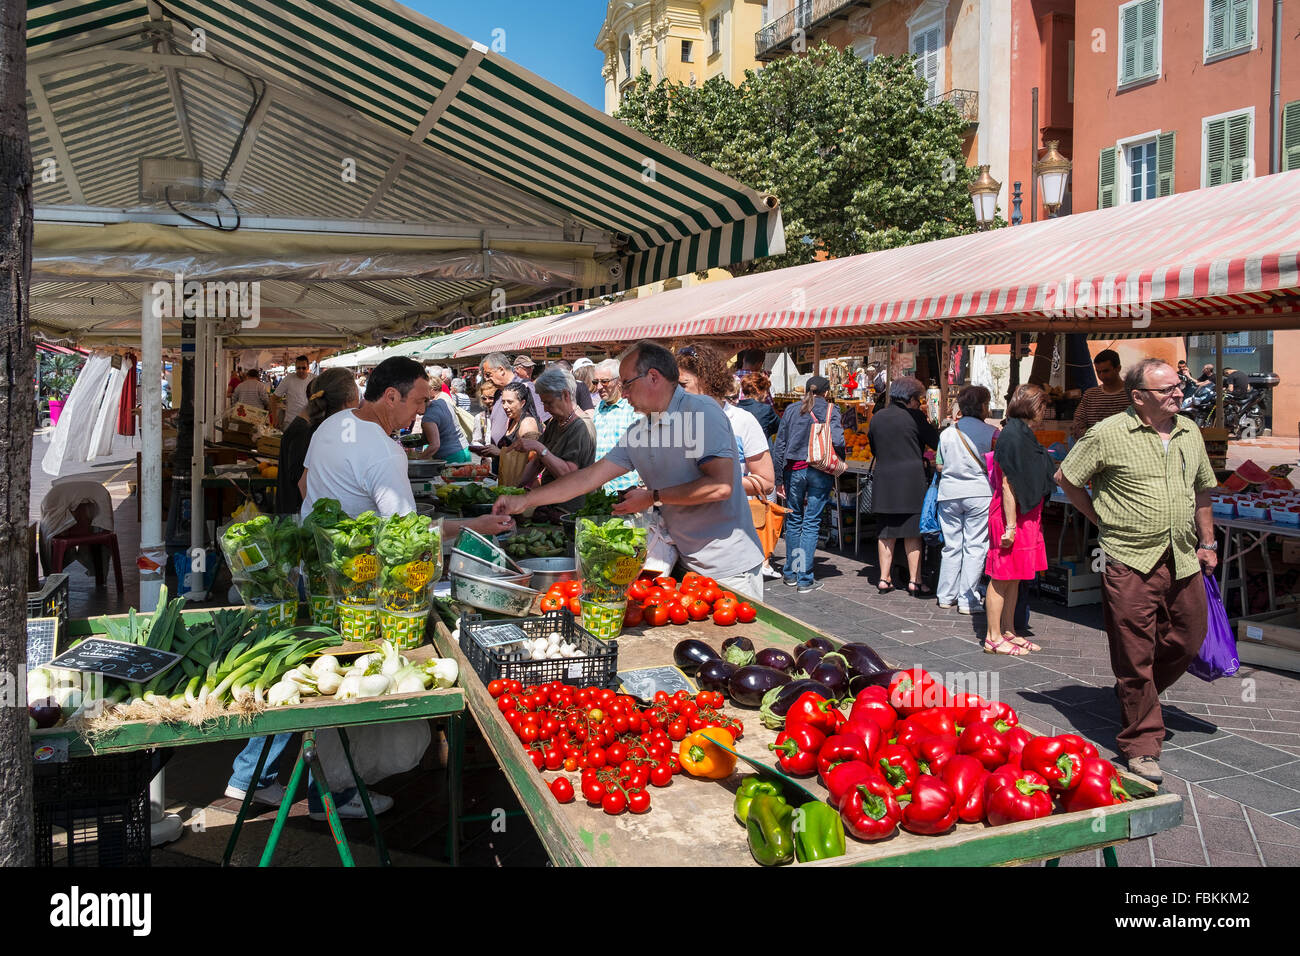 people market france trader vegetable fruit stalls Stock Photo